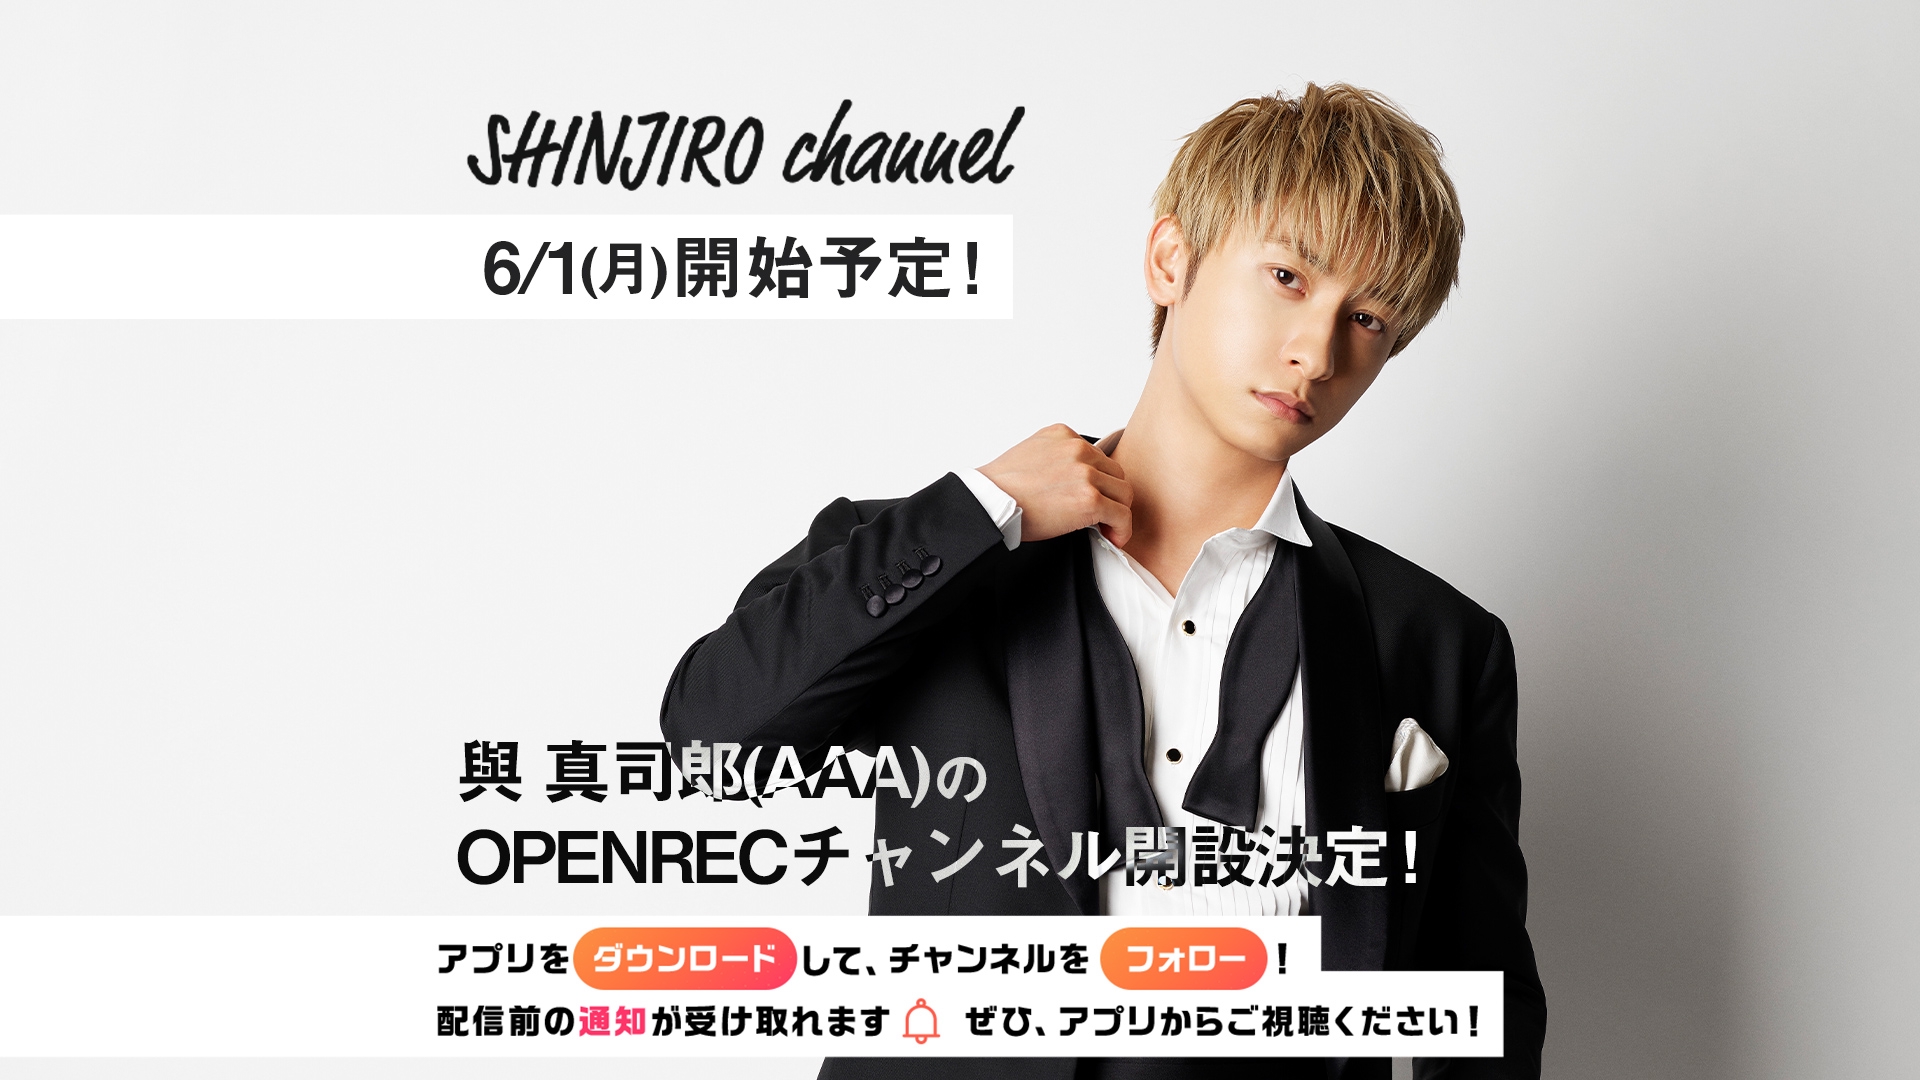 與 真司郎(AAA)さんの公式チャンネル 「SHINJIRO channel」が開設決定 